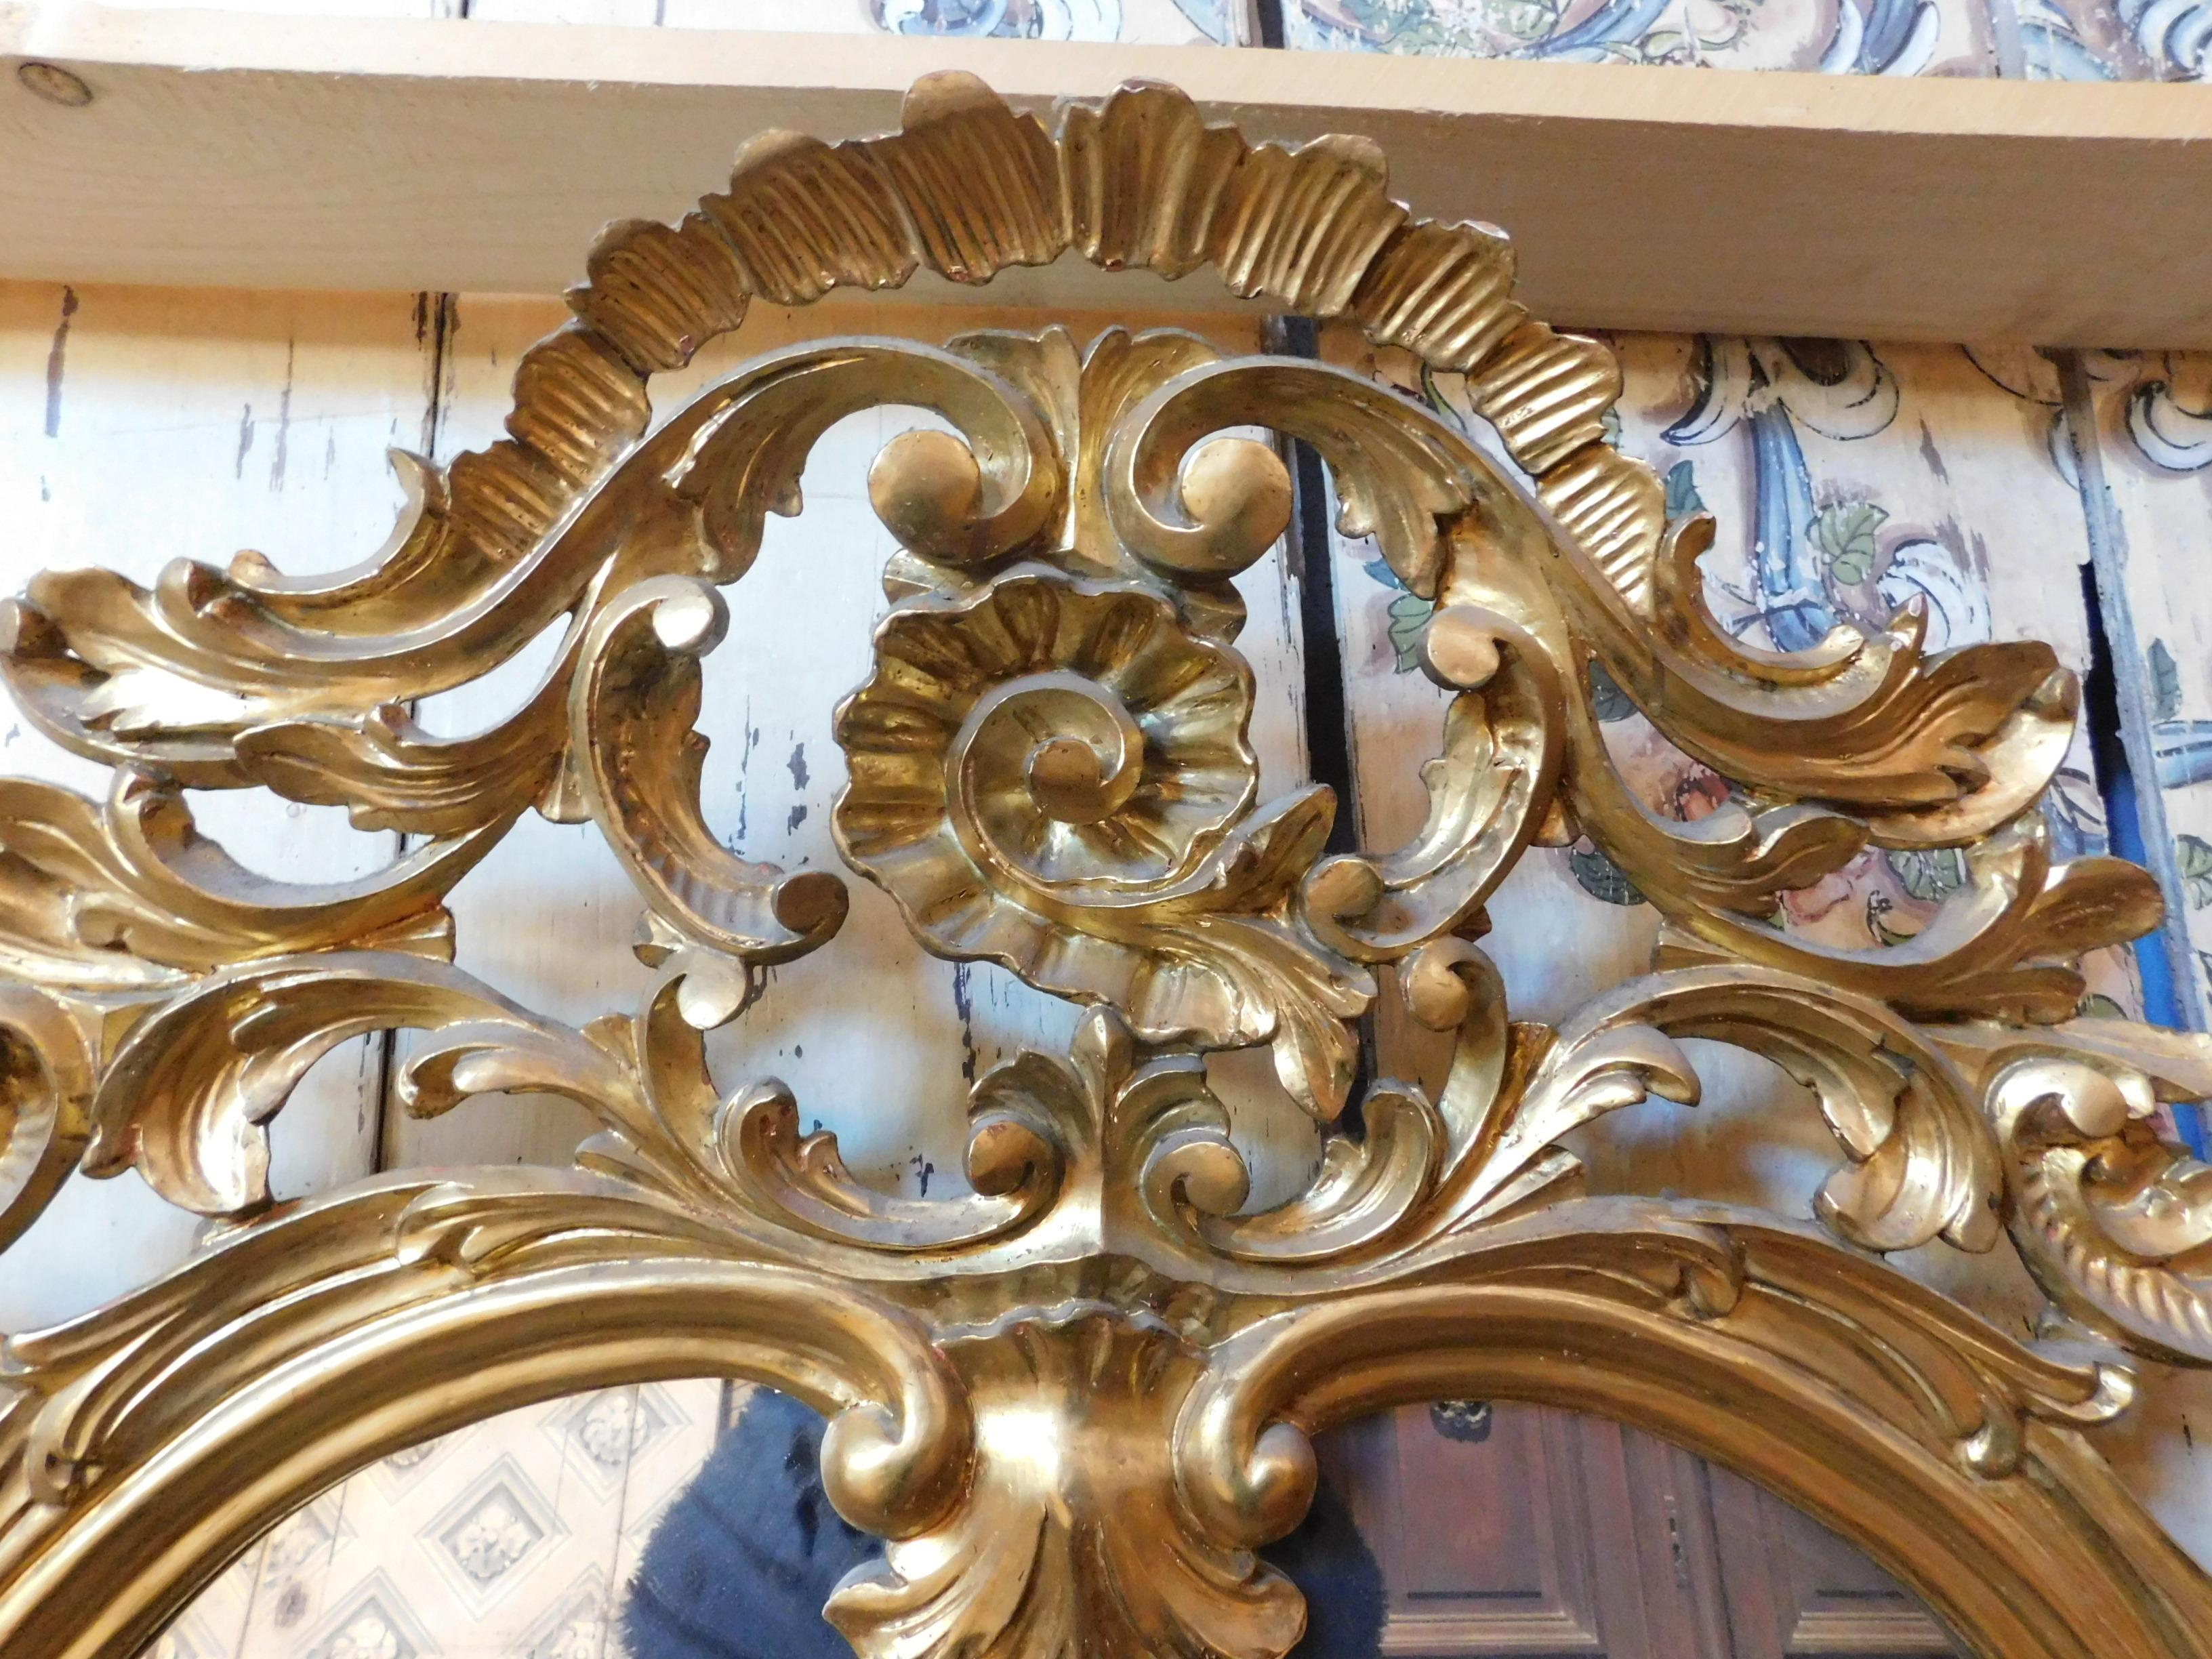 Langer goldener Vintage-Spiegel, mit reich geschnitztem Rahmen und 3 geteilten Spiegeln, ursprünglich war er auf einem Möbelstück aus einer alten piemontesischen Konditorei montiert, geeignet für schicke Clubs, Bars, Büros oder in einem luxuriösen